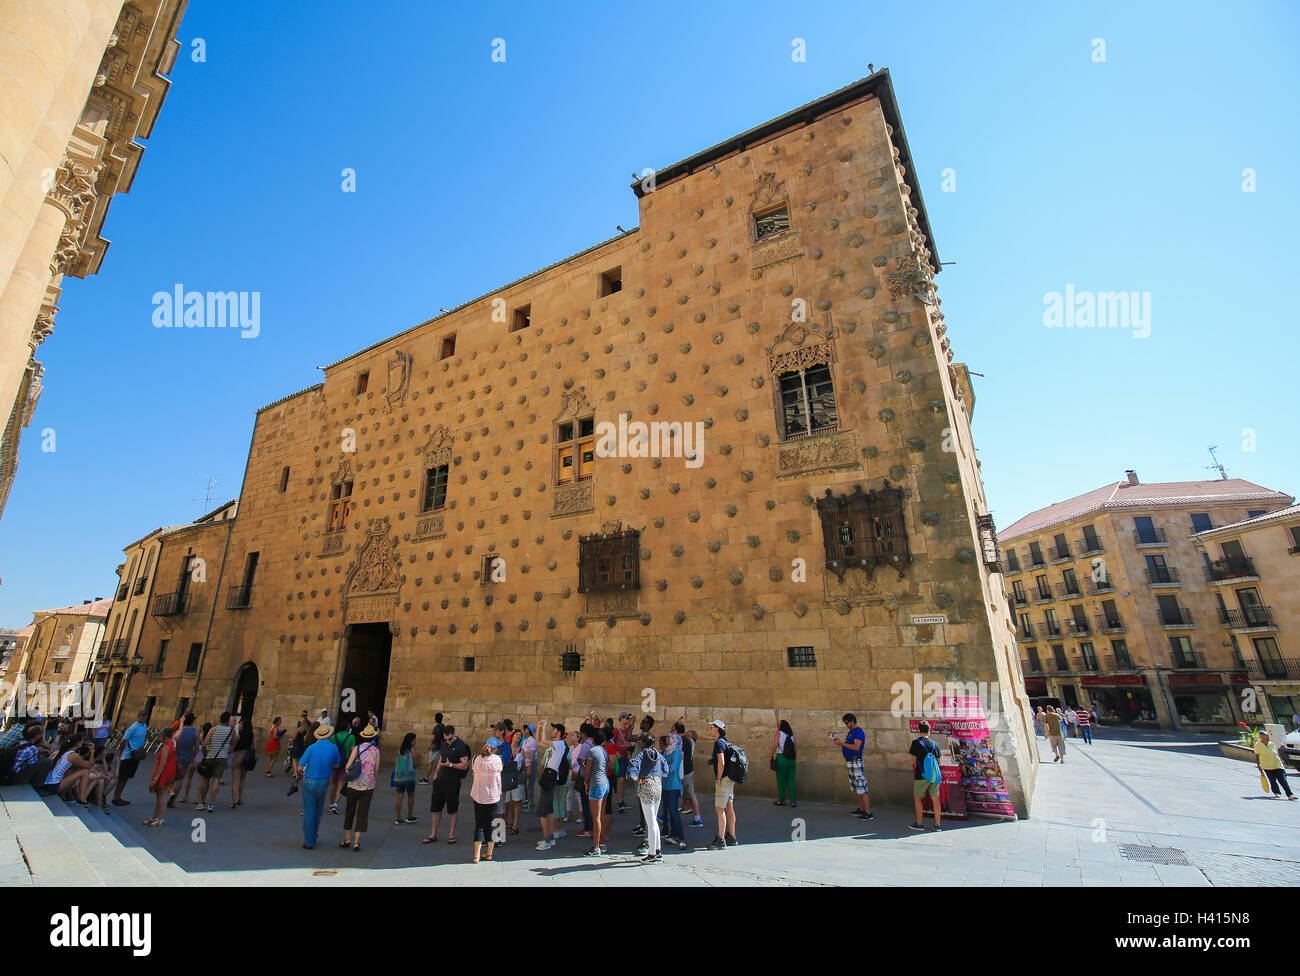 Les touristes en face de la Casa de las Conchas, un bâtiment historique dans le centre de Salamanca, Espagne Banque D'Images